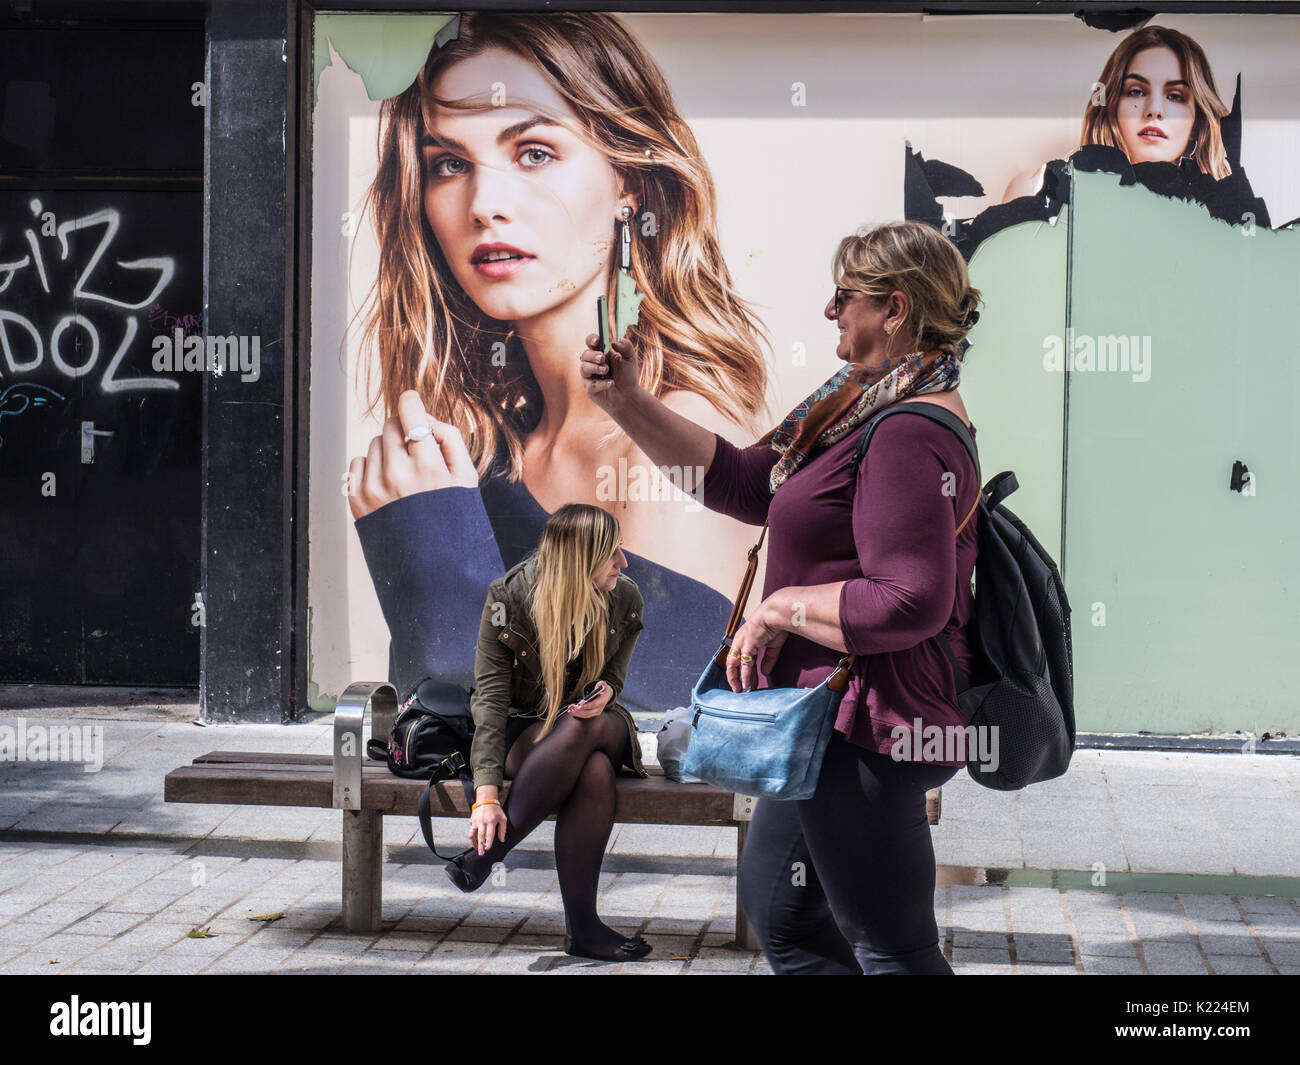 Frau unter selfie in Street, Liverpool, England, UK Stockfoto